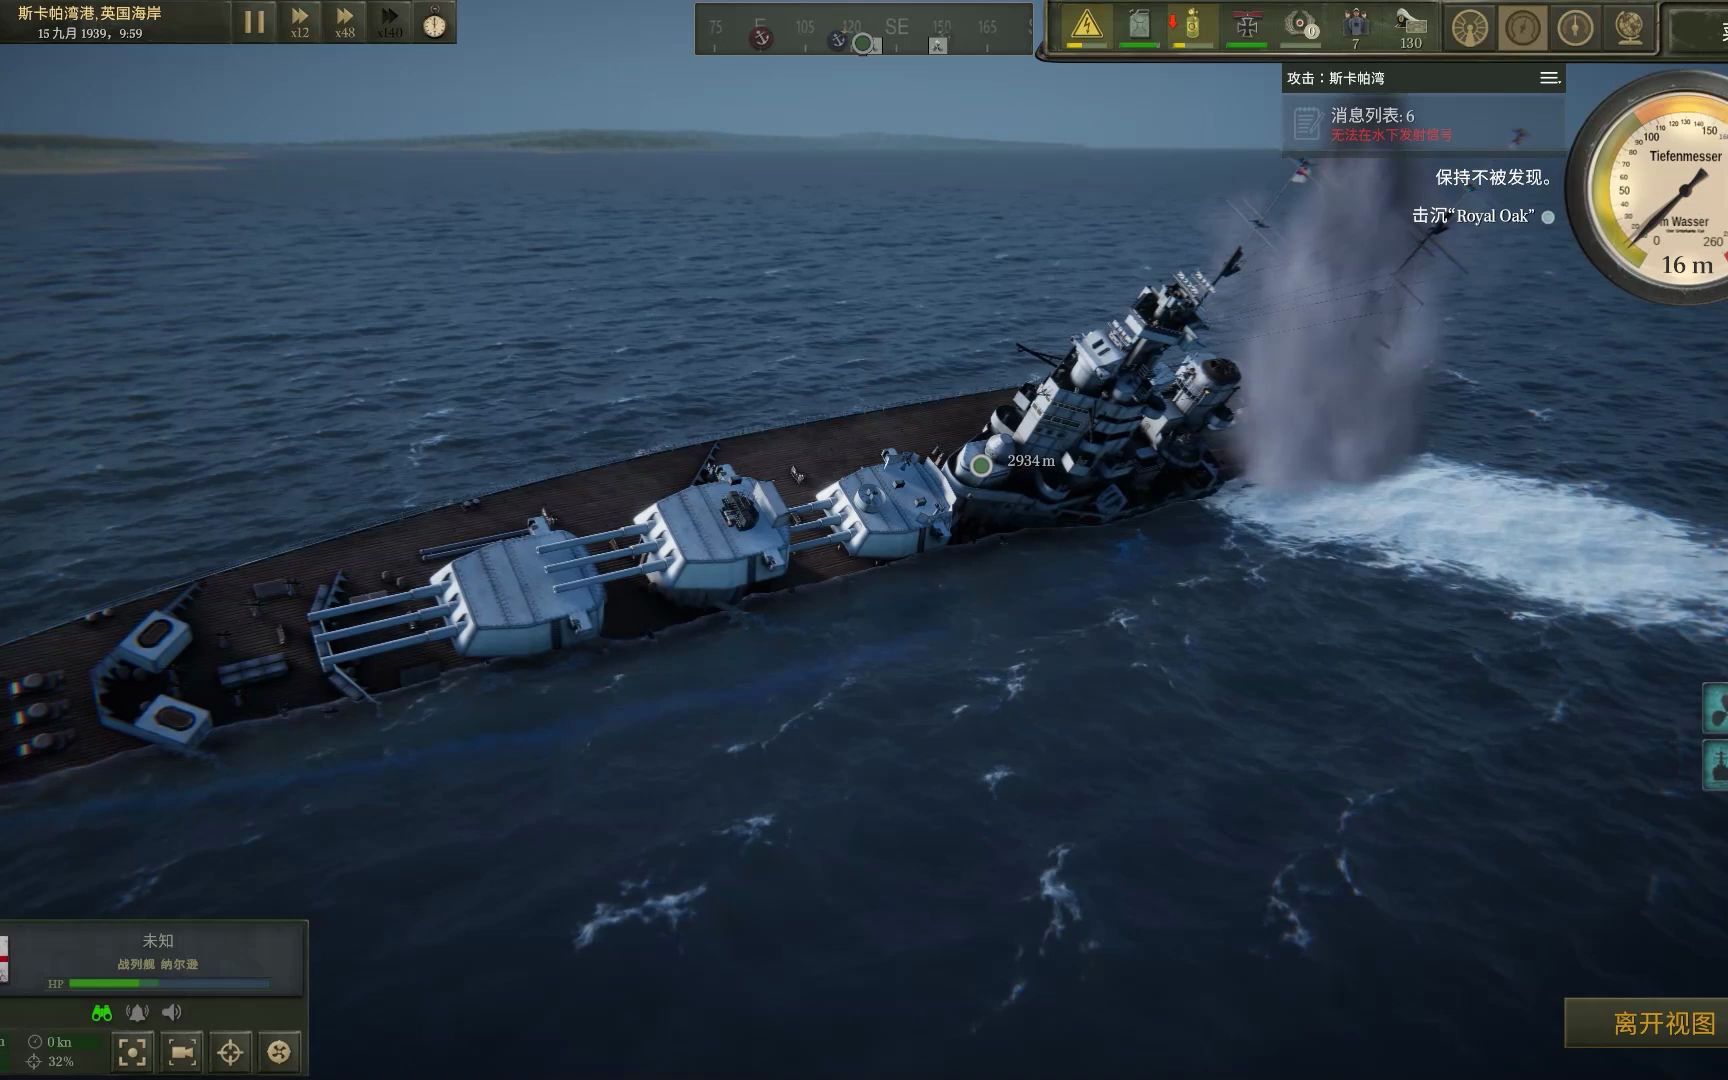 【U-boat】突袭斯卡帕湾，四发鱼雷击沉“皇家橡树号”战列舰